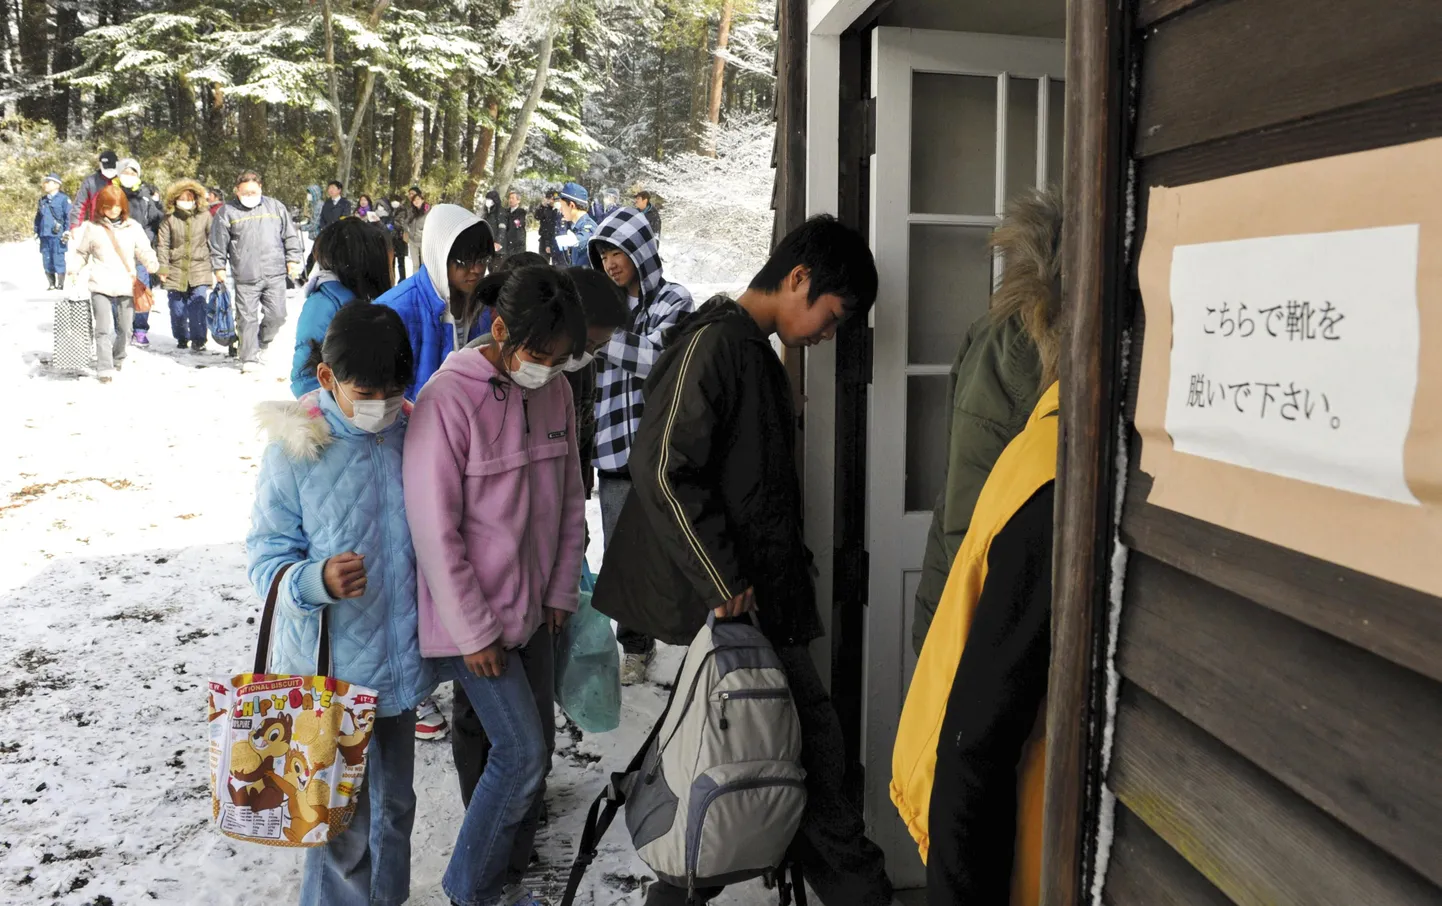 Evakueeritud saabumas Nasus asuvasse keiserlikku villasse.Ukse juures on silt: palume välisjalatsid ära võtta